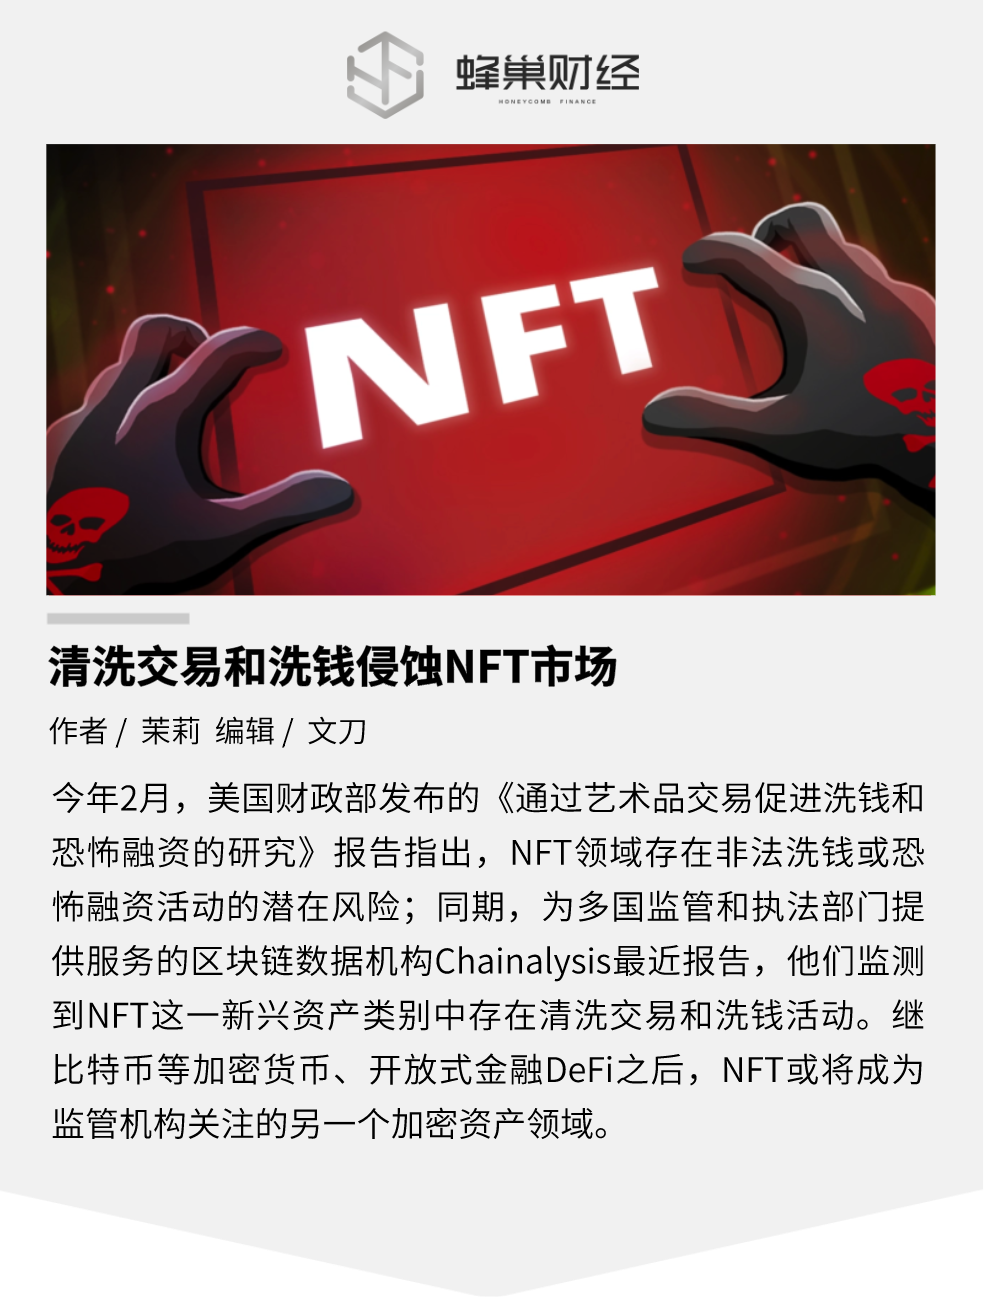 清洗交易和洗钱侵蚀 NFT 市场